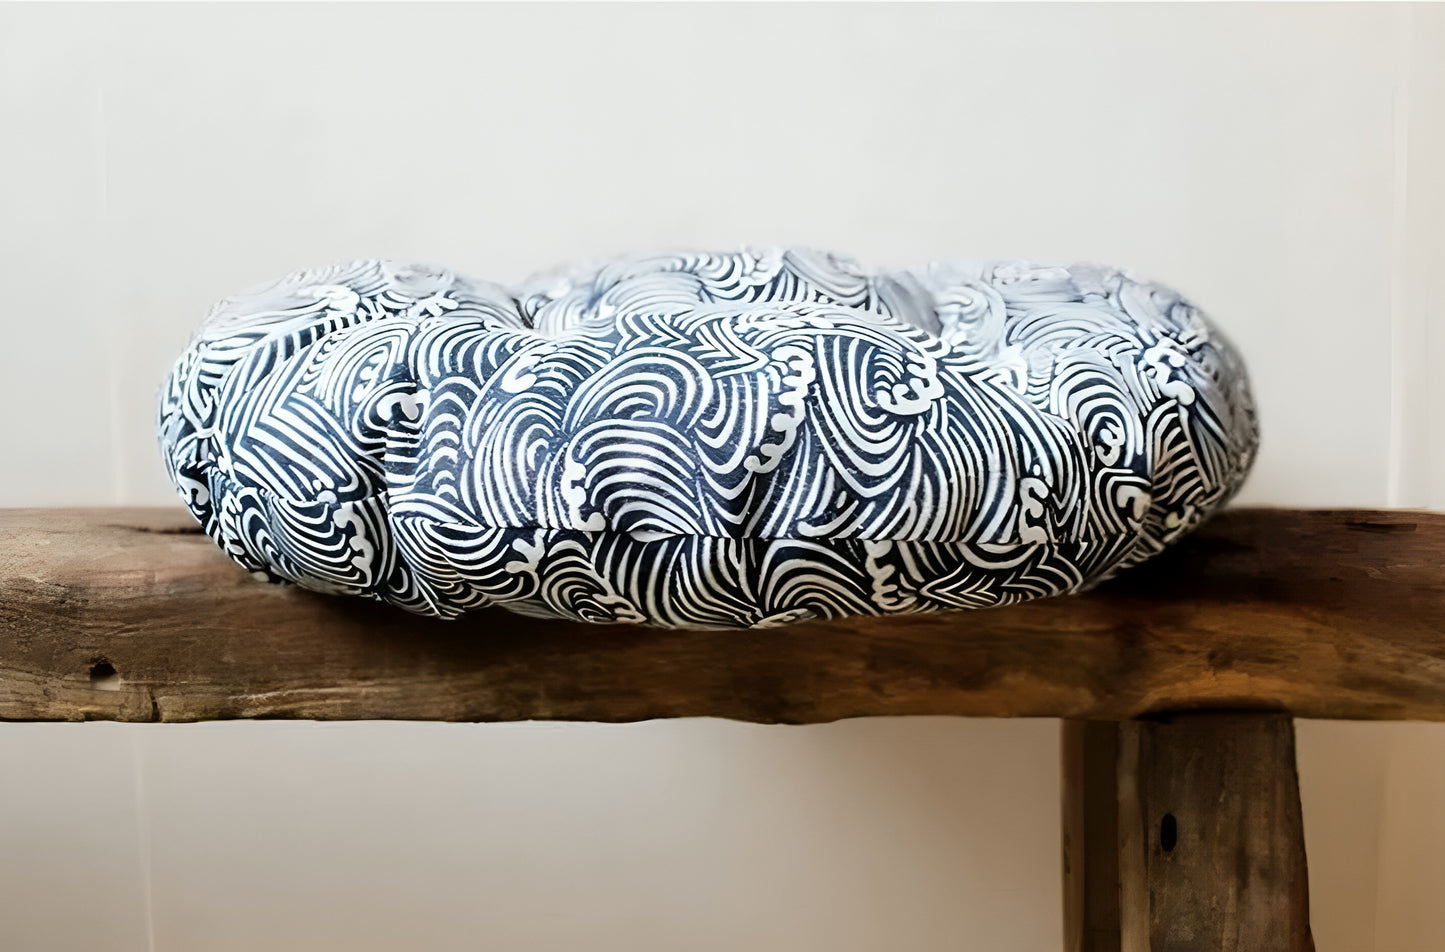 Japanese-style Ukiyo-e wave meditation cushion